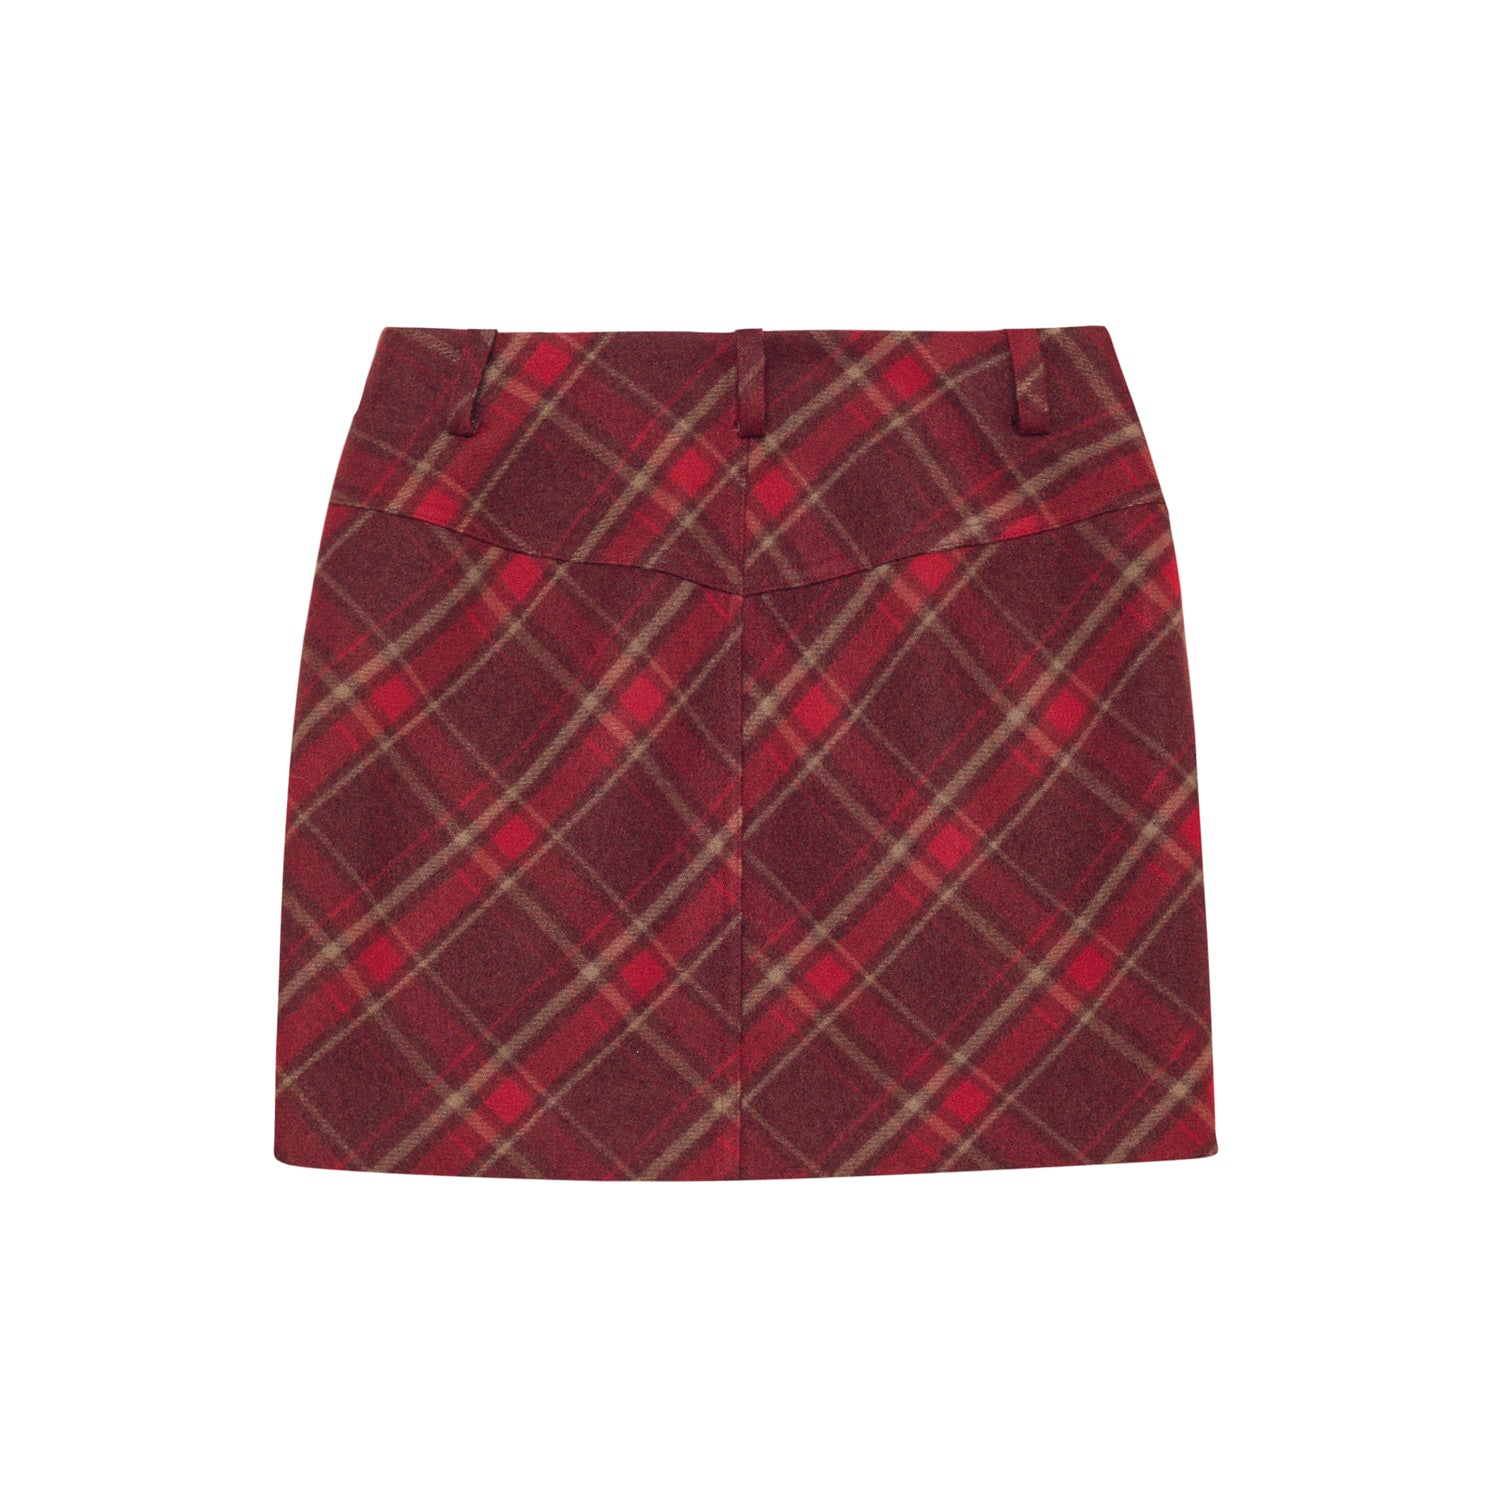 SOMESOWE Red Checkered Skirt | MADA IN CHINA